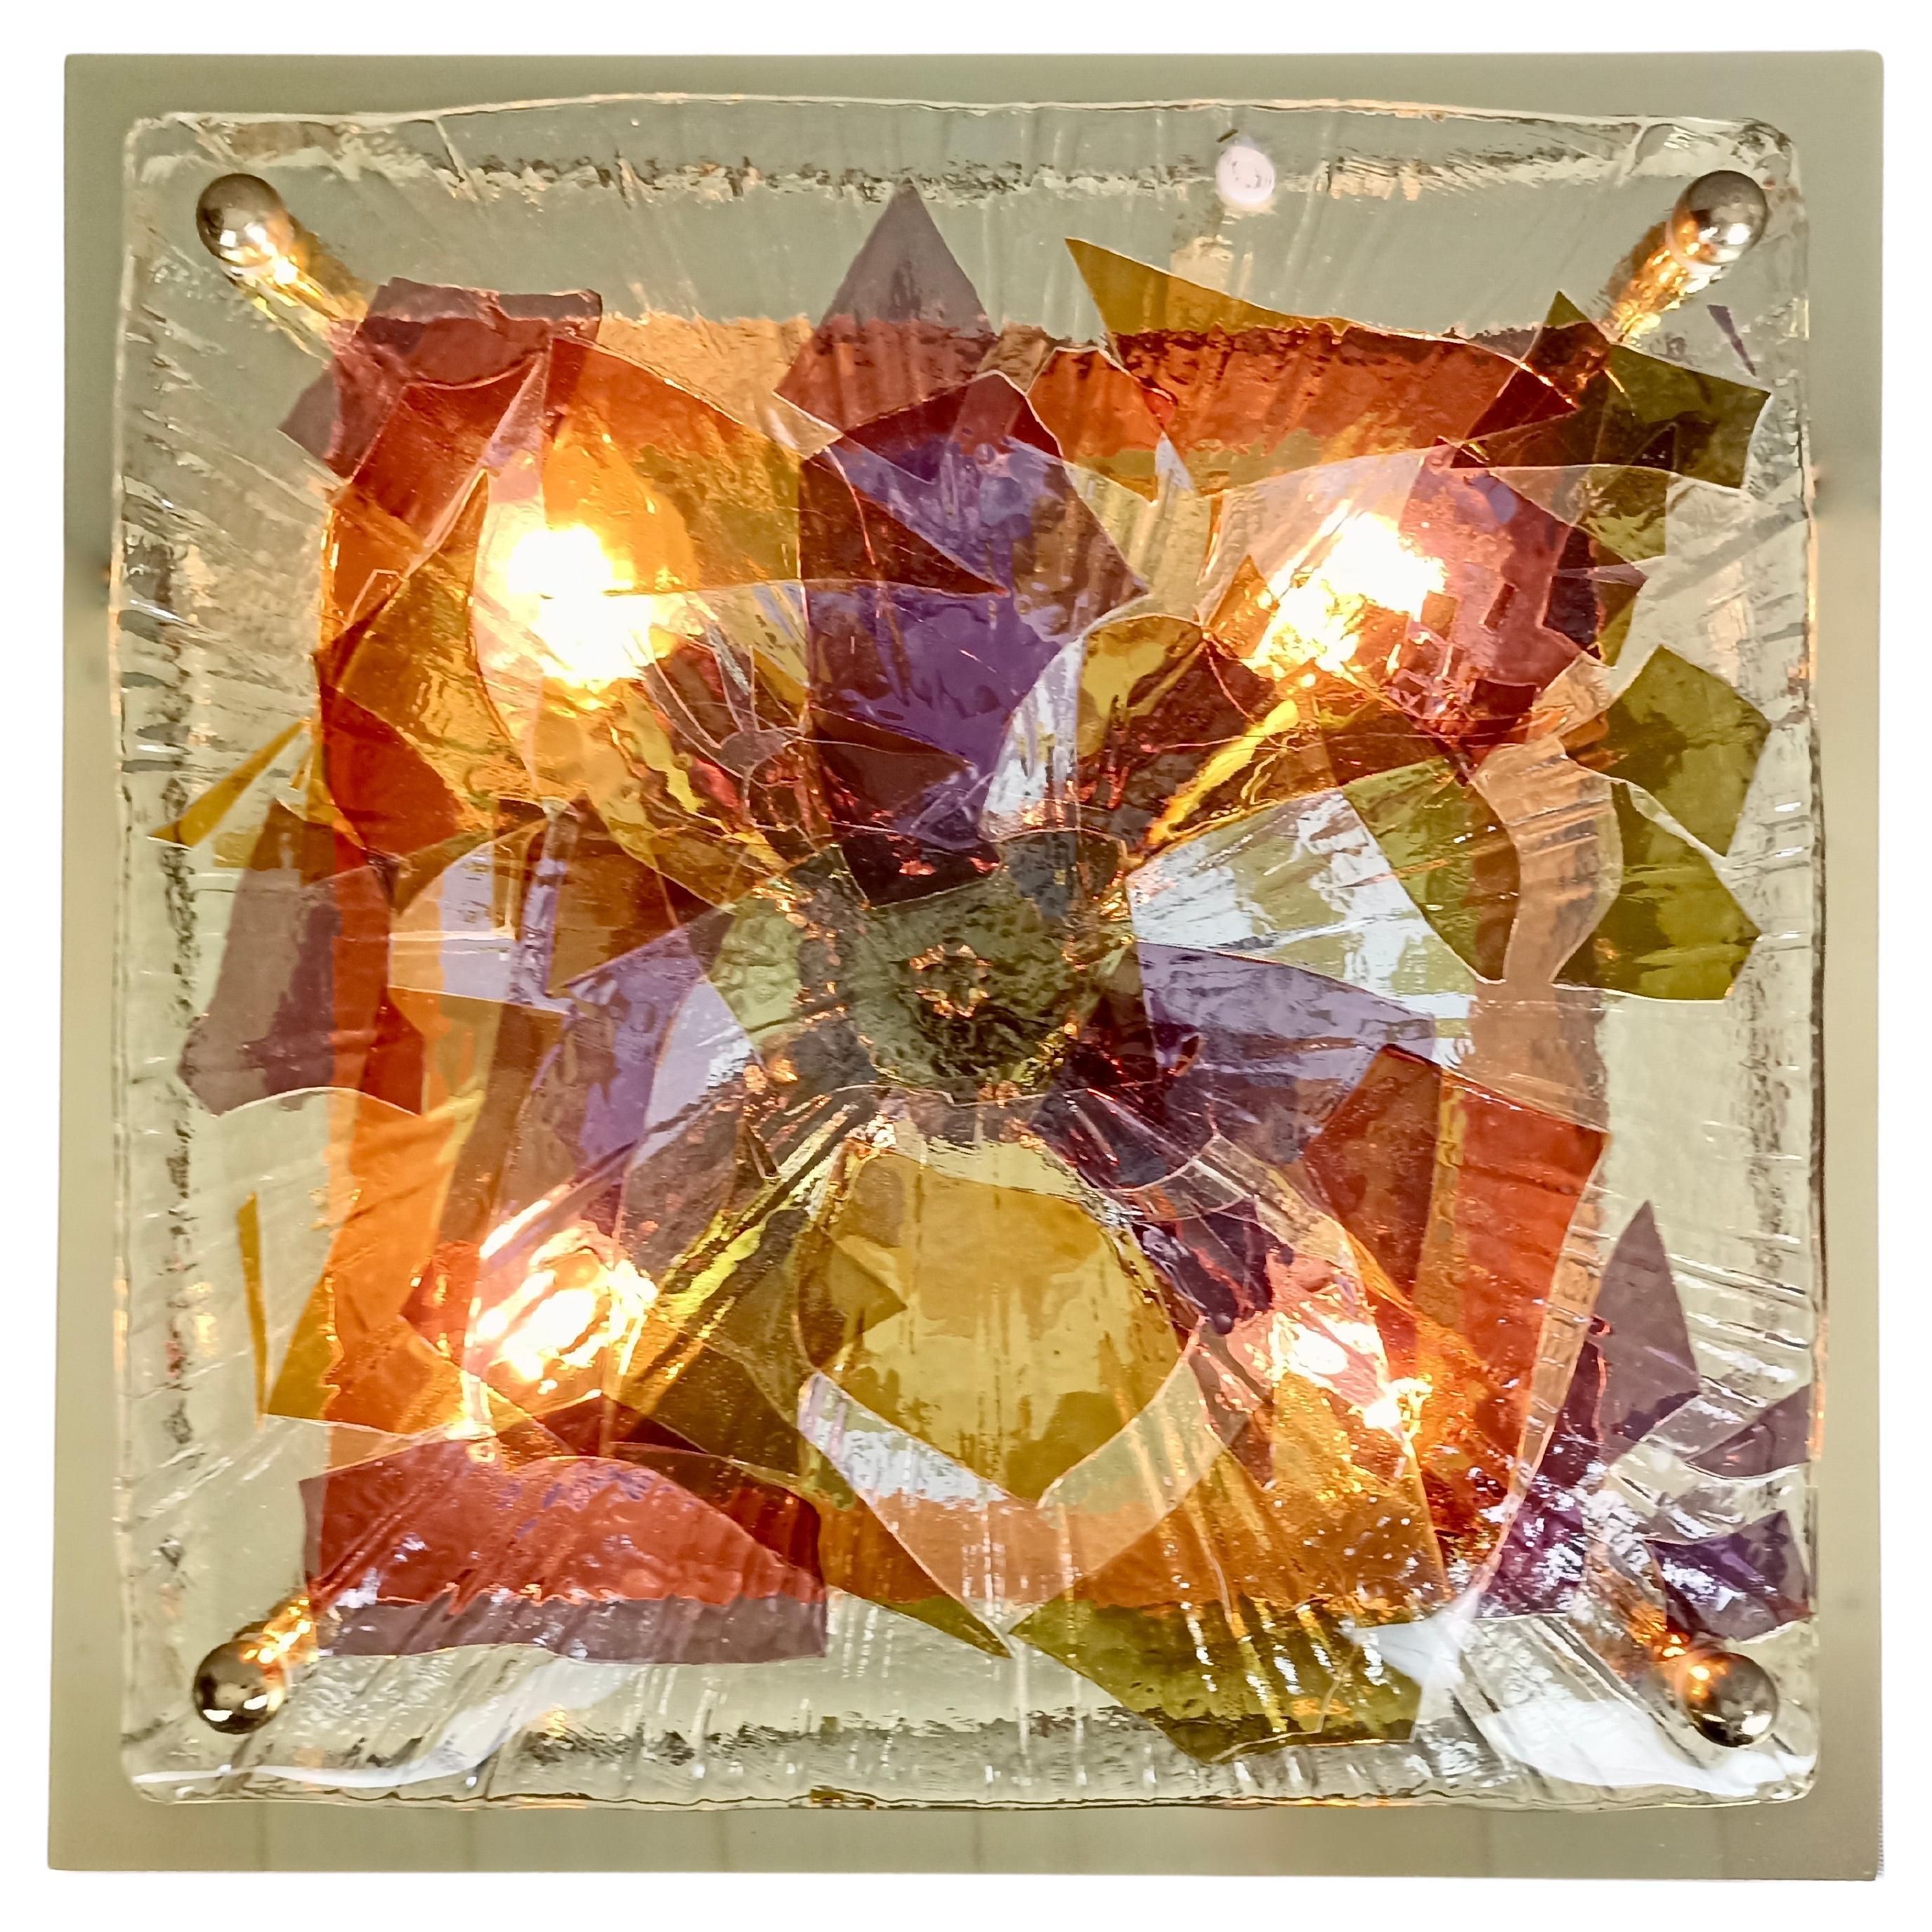 Schöne originale Decken- oder Wandleuchte 'La Murrina' aus den 1990er Jahren aus dickem Muranoglas in verschiedenen Farben aus der Serie 'Foglie Liberty'. 
Der Lampenschirm besteht aus klarem, leicht gewölbtem Glas und ist mit dünnen, farbigen